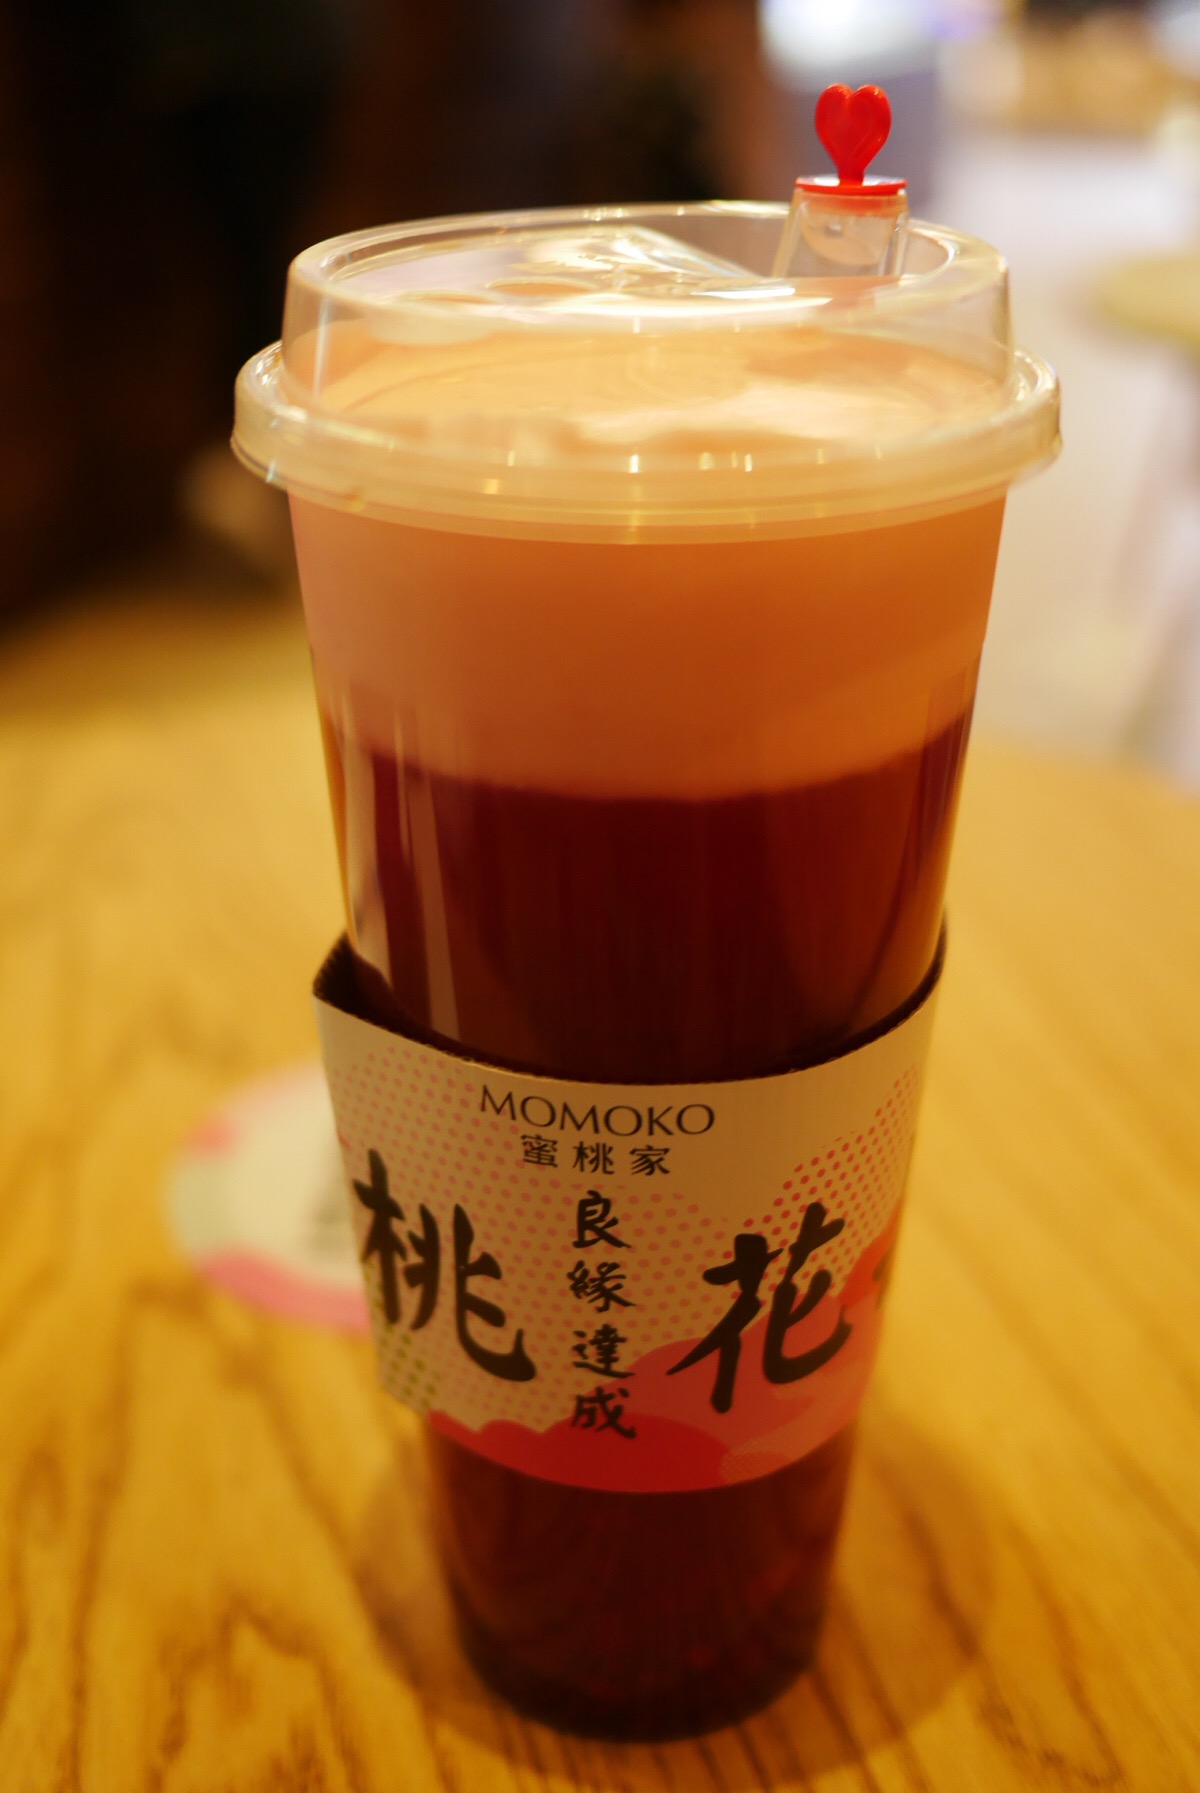 网红店momoko 这个桃花饮颜值和味道竟然能成正比